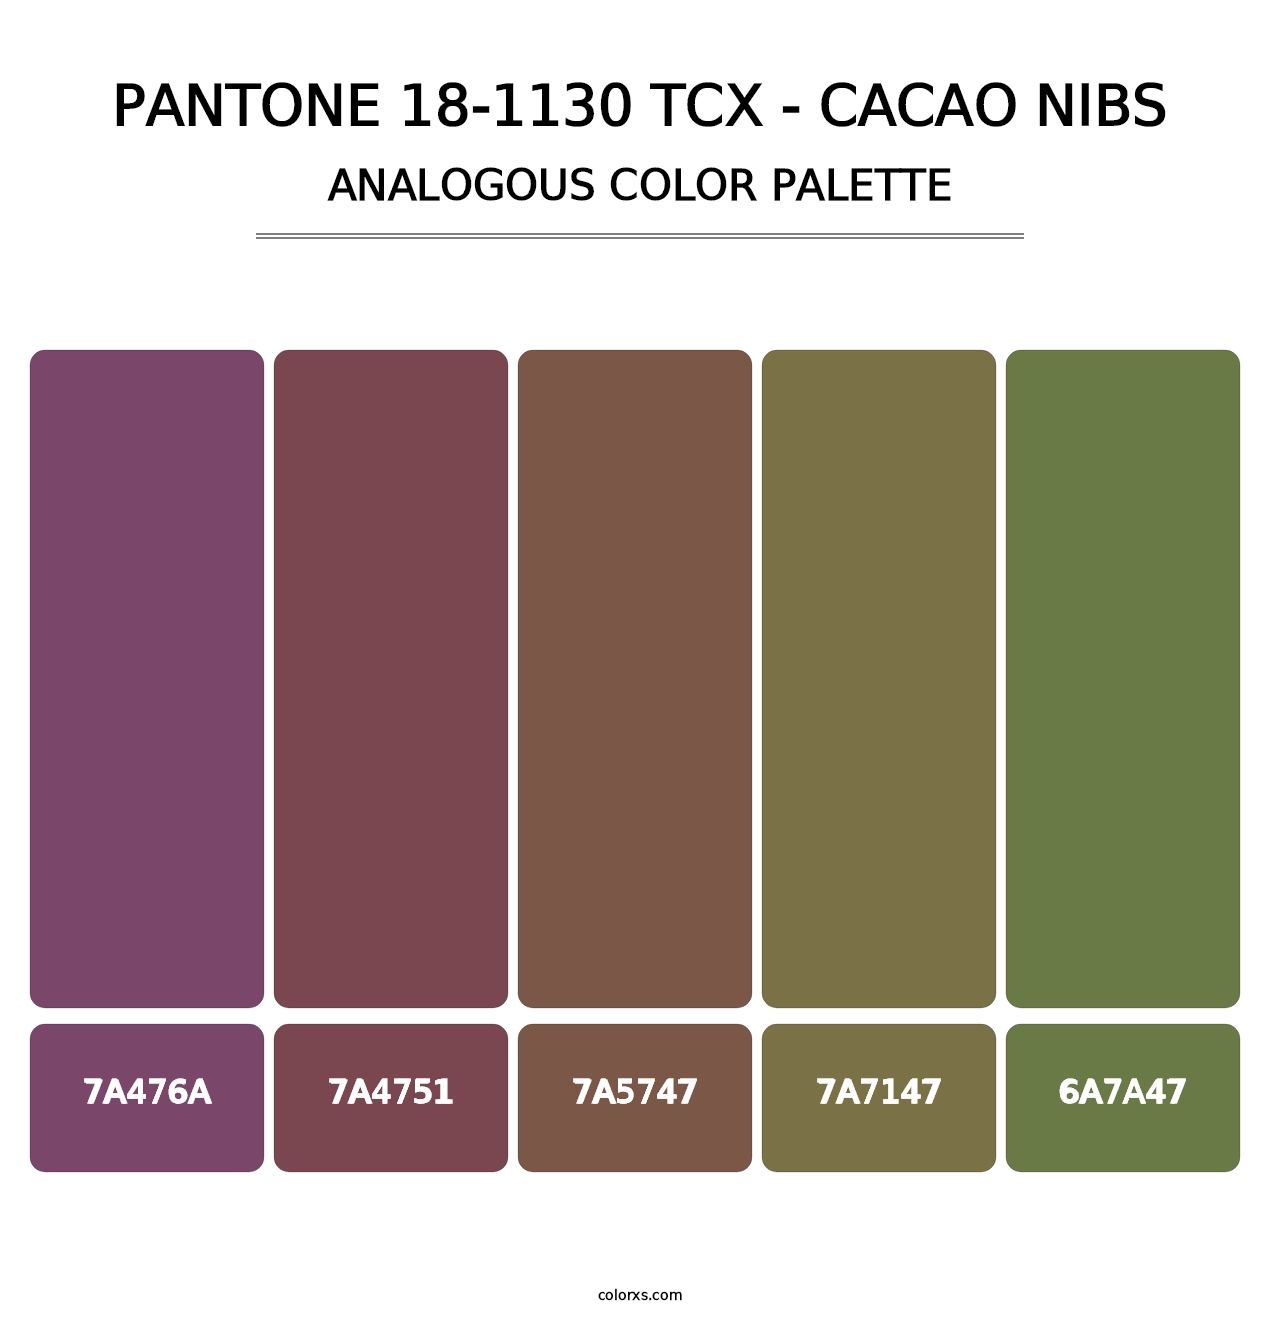 PANTONE 18-1130 TCX - Cacao Nibs - Analogous Color Palette